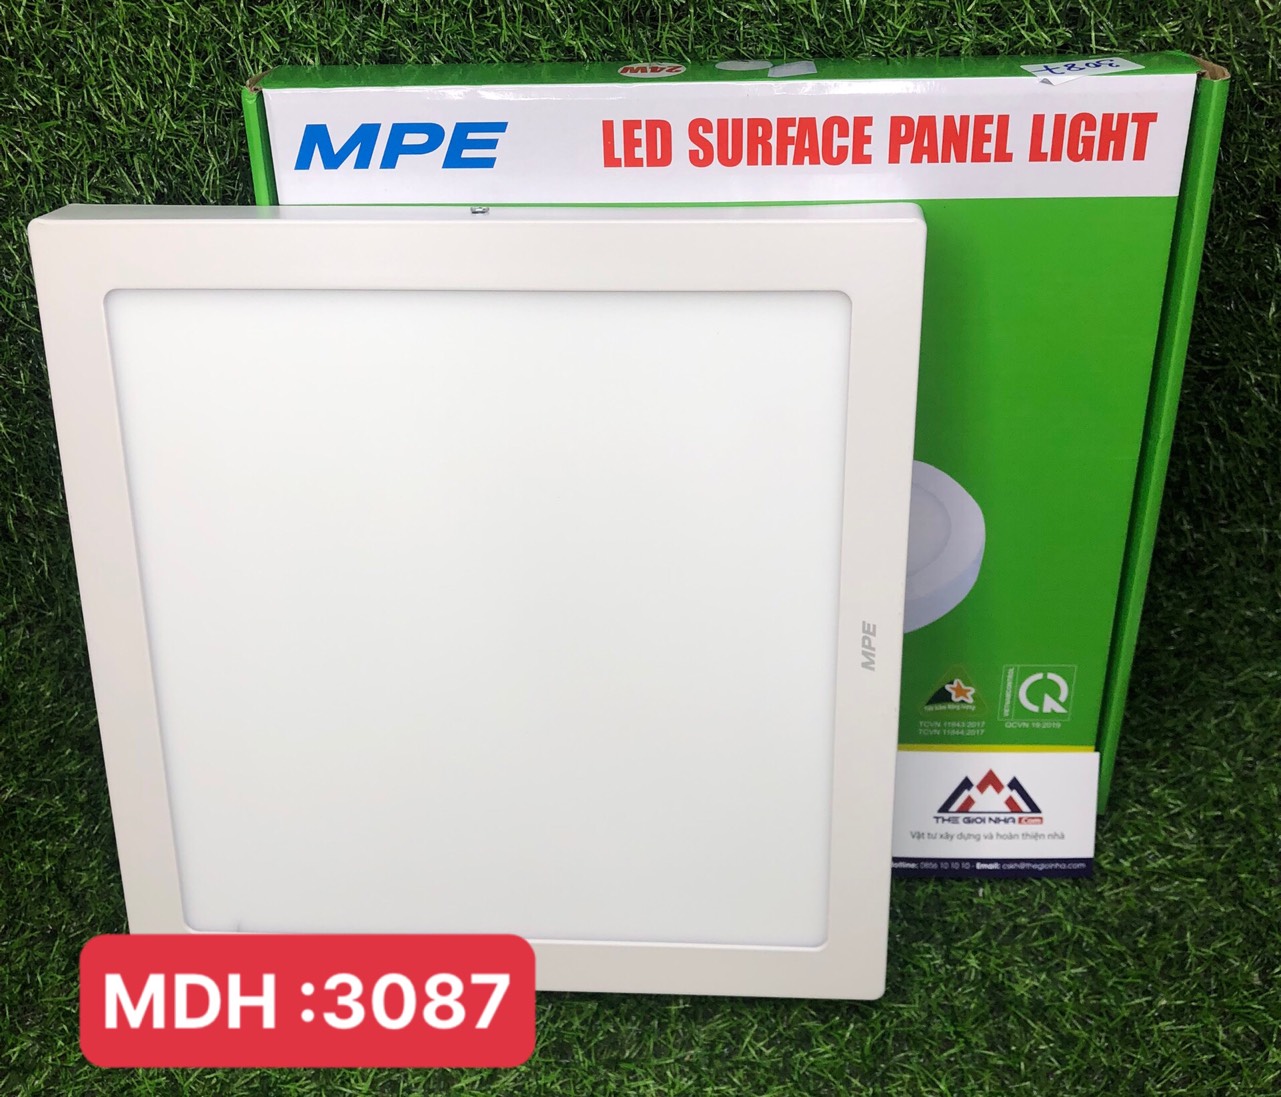 Đèn led panel ốp trần nổi vuông 24W MPE SSPL-24V, ánh sáng vàng, kích thước 300*300*25mm, đóng gói 1 cái/hộp, 10 cái/thùng